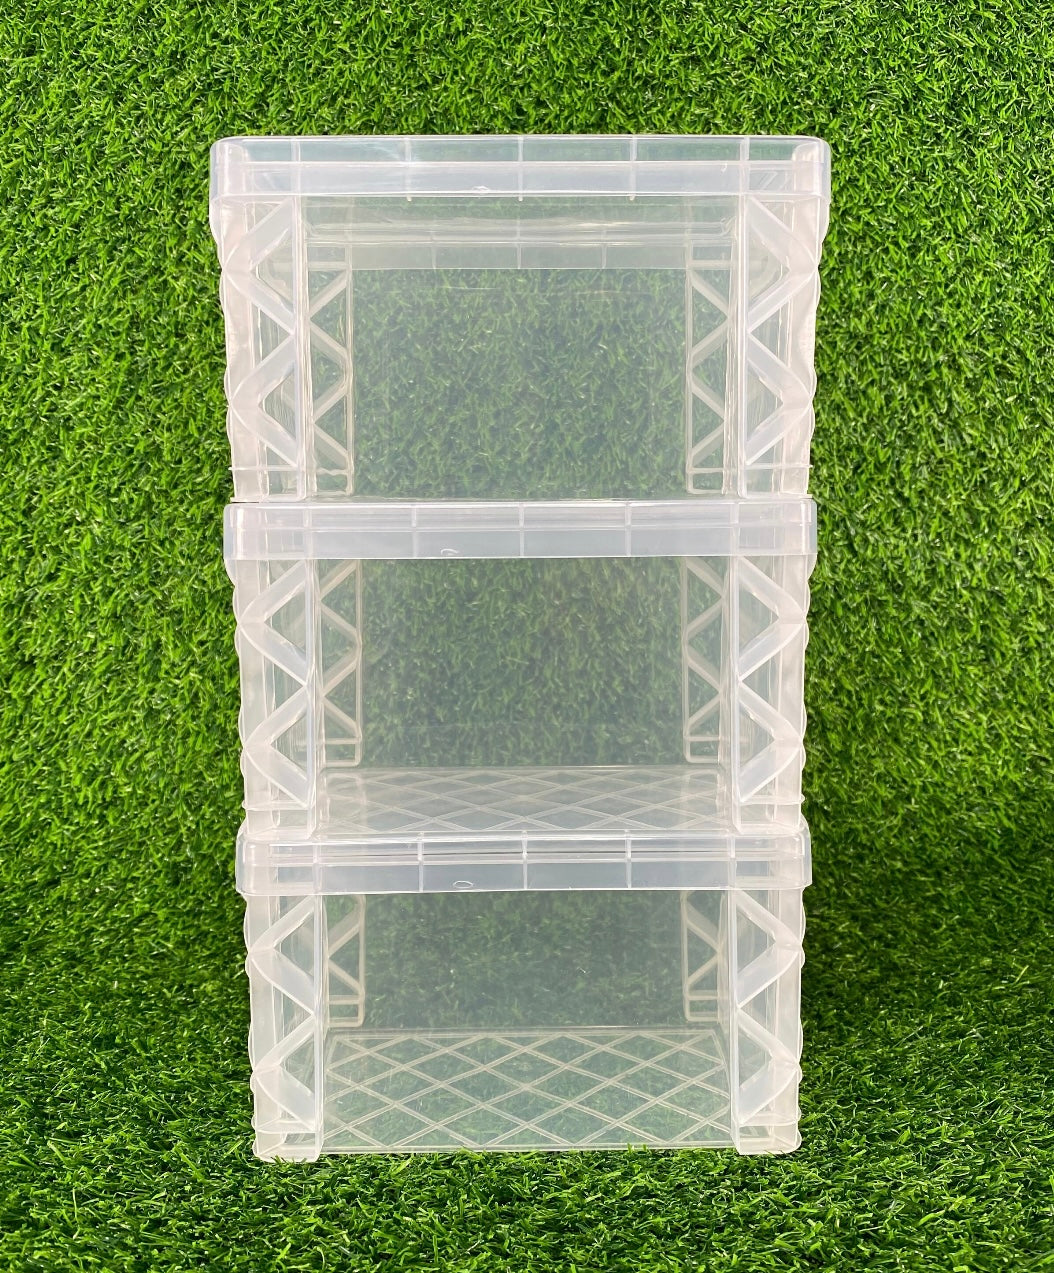 3x5 Storage Box